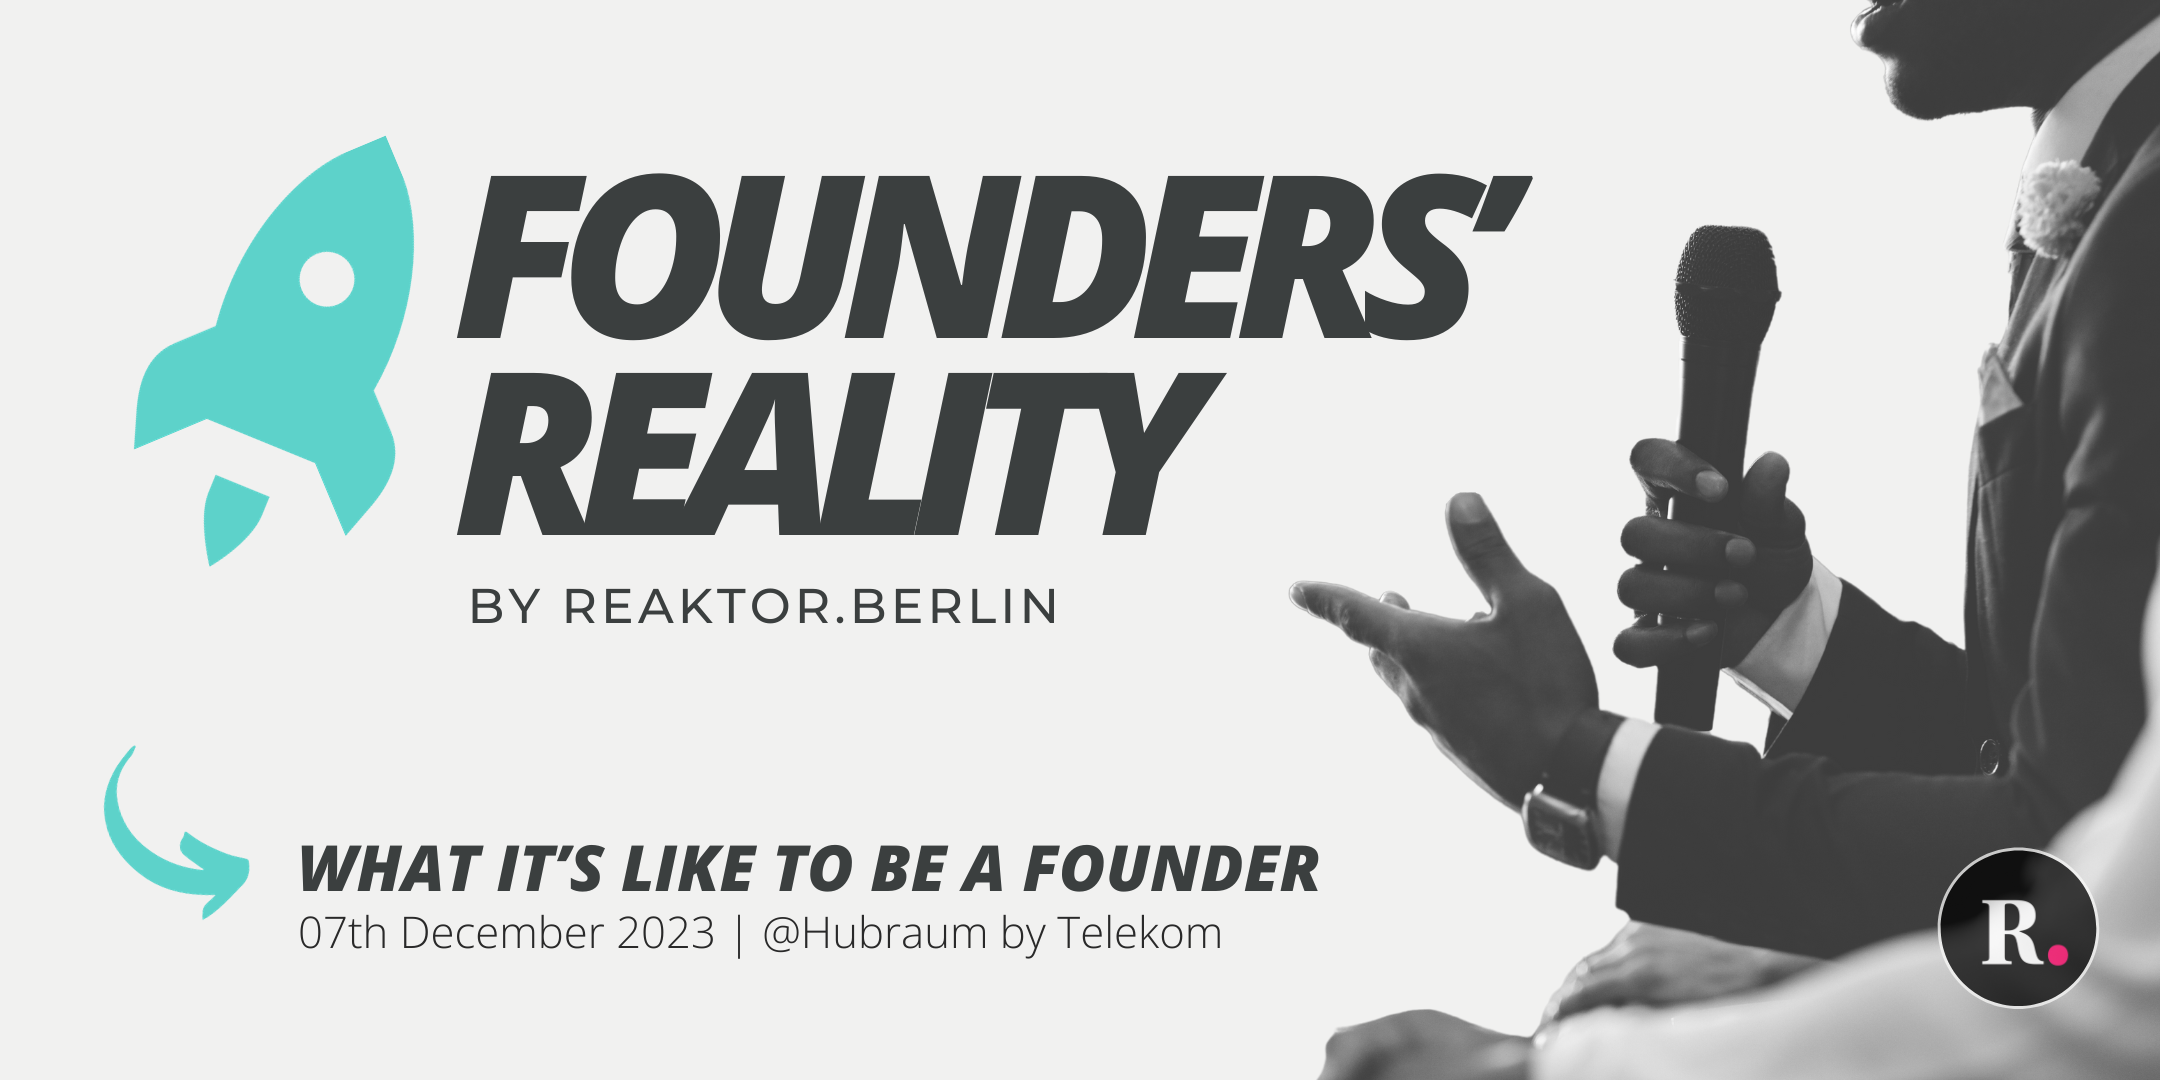 Founders' Reality by Reaktor.Berlin